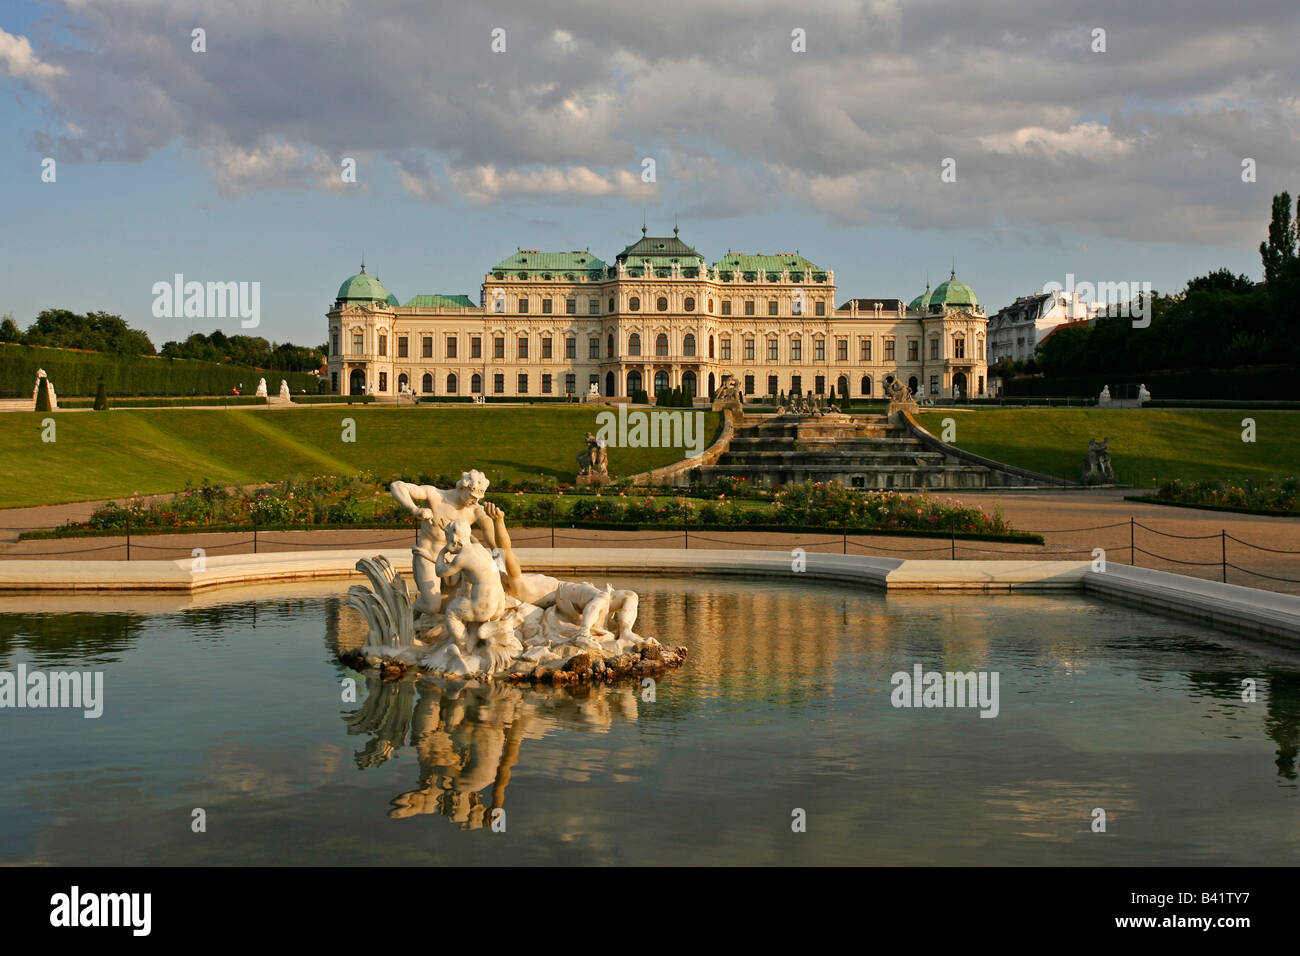 Oberes Belvedere Vienna Austria Foto de stock